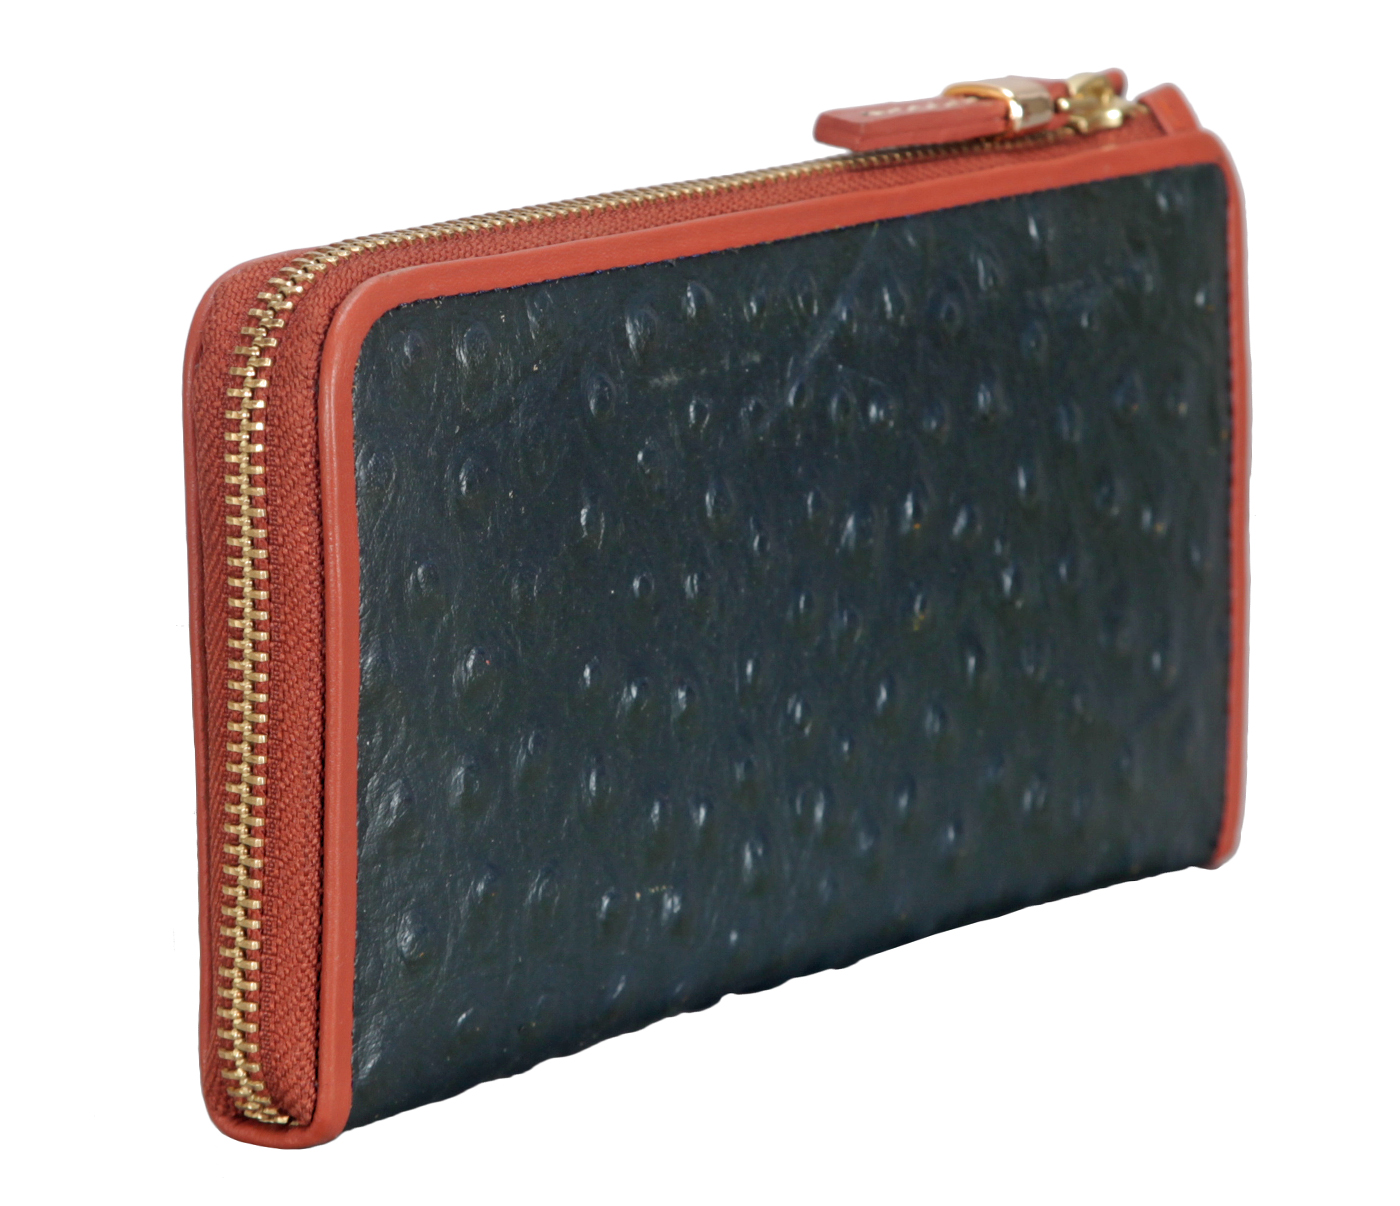 W319-Jutte-Women's Wallet And Clutch In Genuine Leather - Black